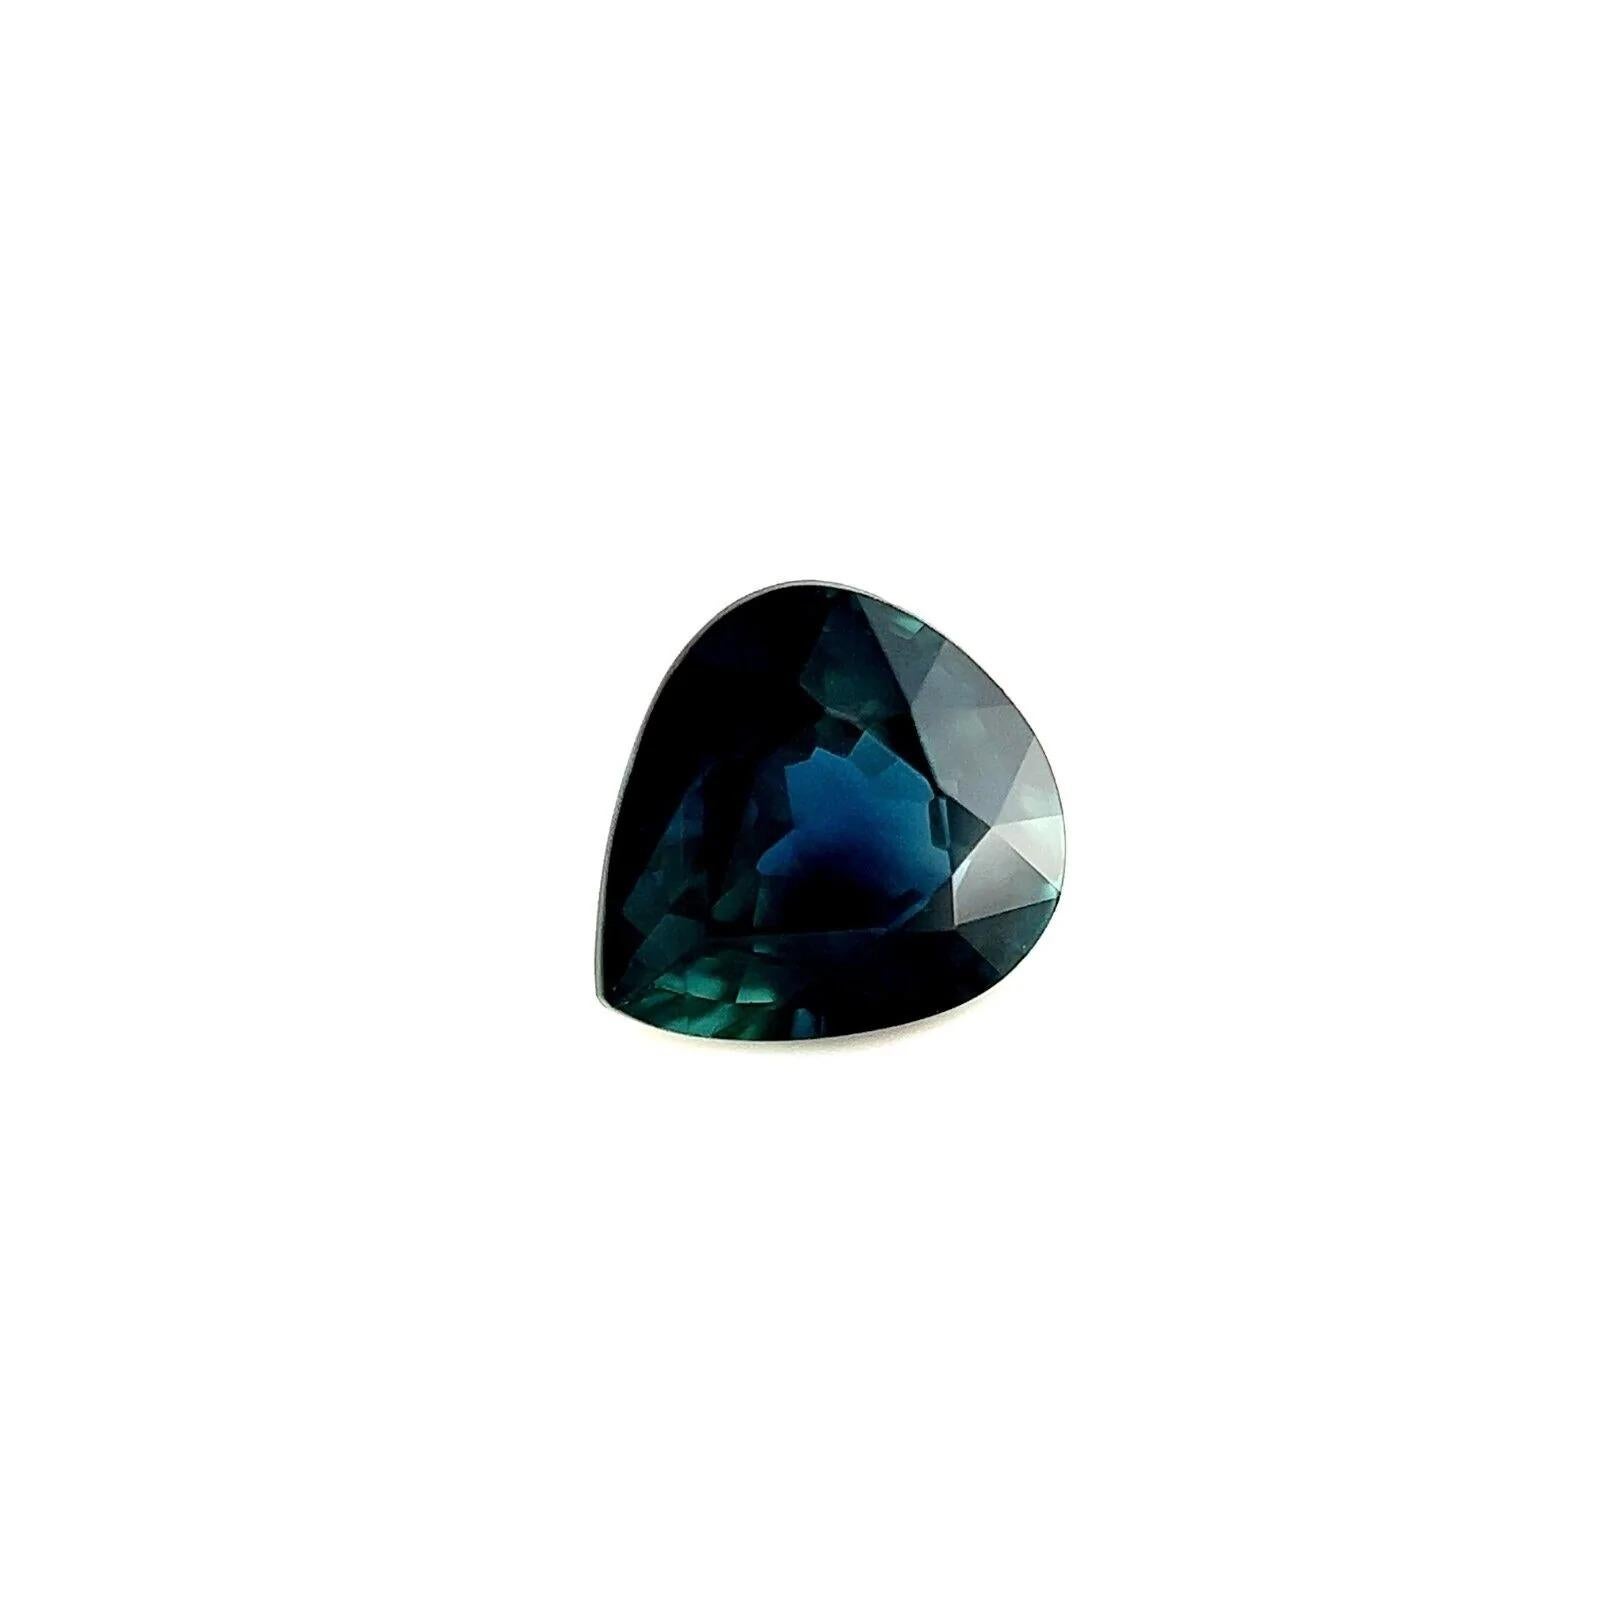 Feiner australischer tiefblauer Saphir 0,96ct Birne Teardrop-Schliff selten 6x5,7mm

Feiner Deep Teal Blausaphir Edelstein.
0.96 Karat mit einer schönen tiefblauen Farbe und ausgezeichneter Klarheit, ein sehr sauberer Stein. Außerdem hat er einen